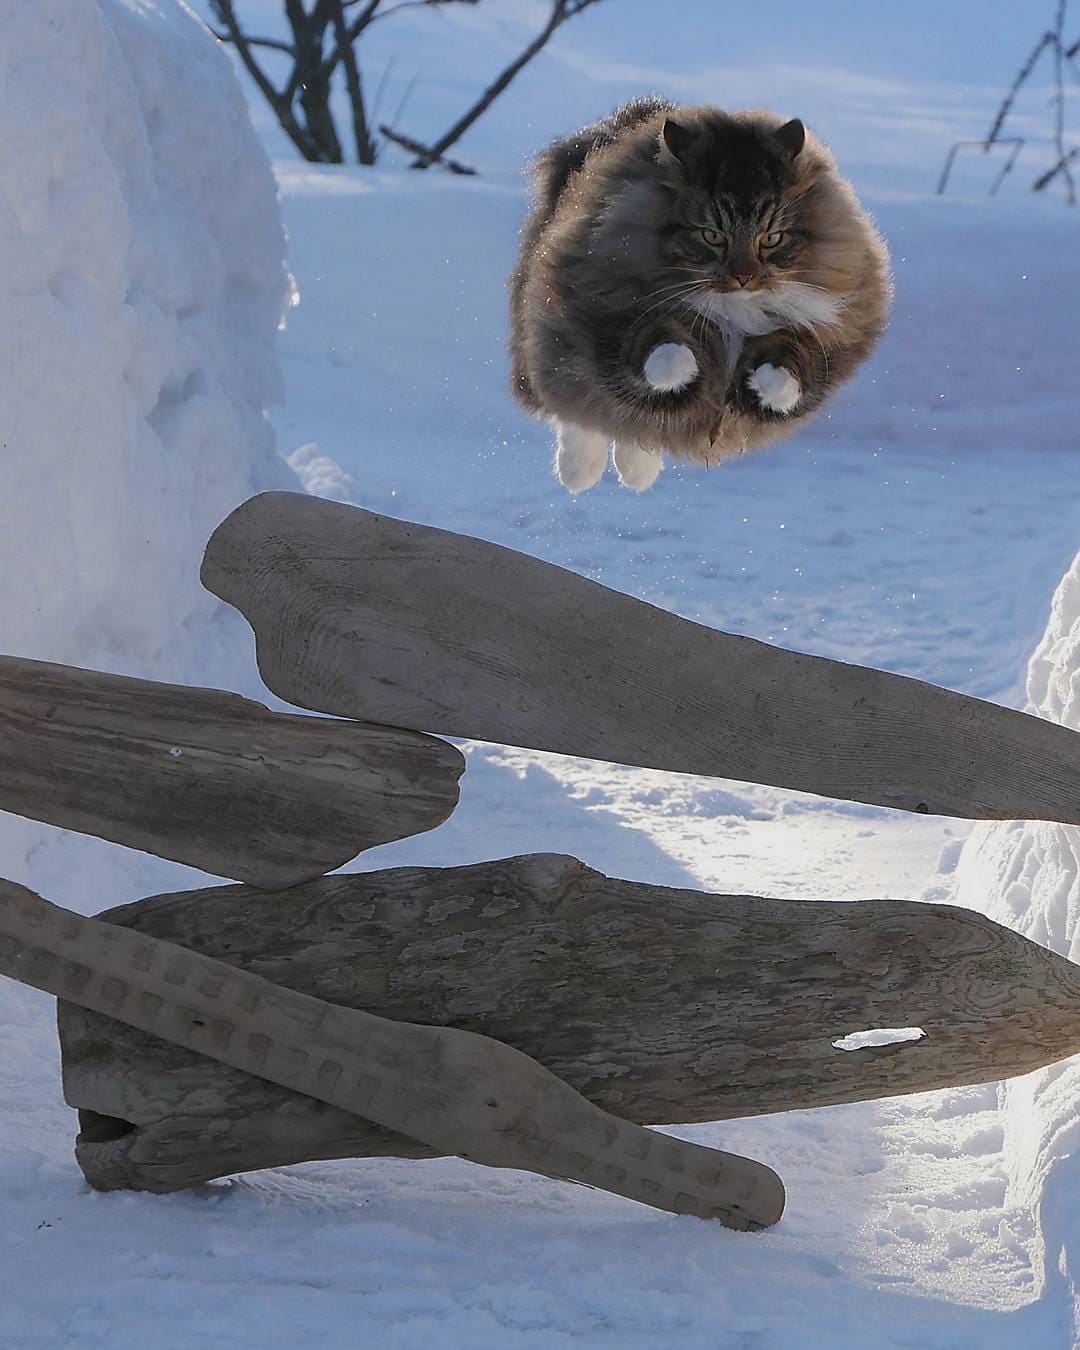 27 фотографий шикарных норвежских лесных кошек, которые огромны, пушисты и обожают снег 86